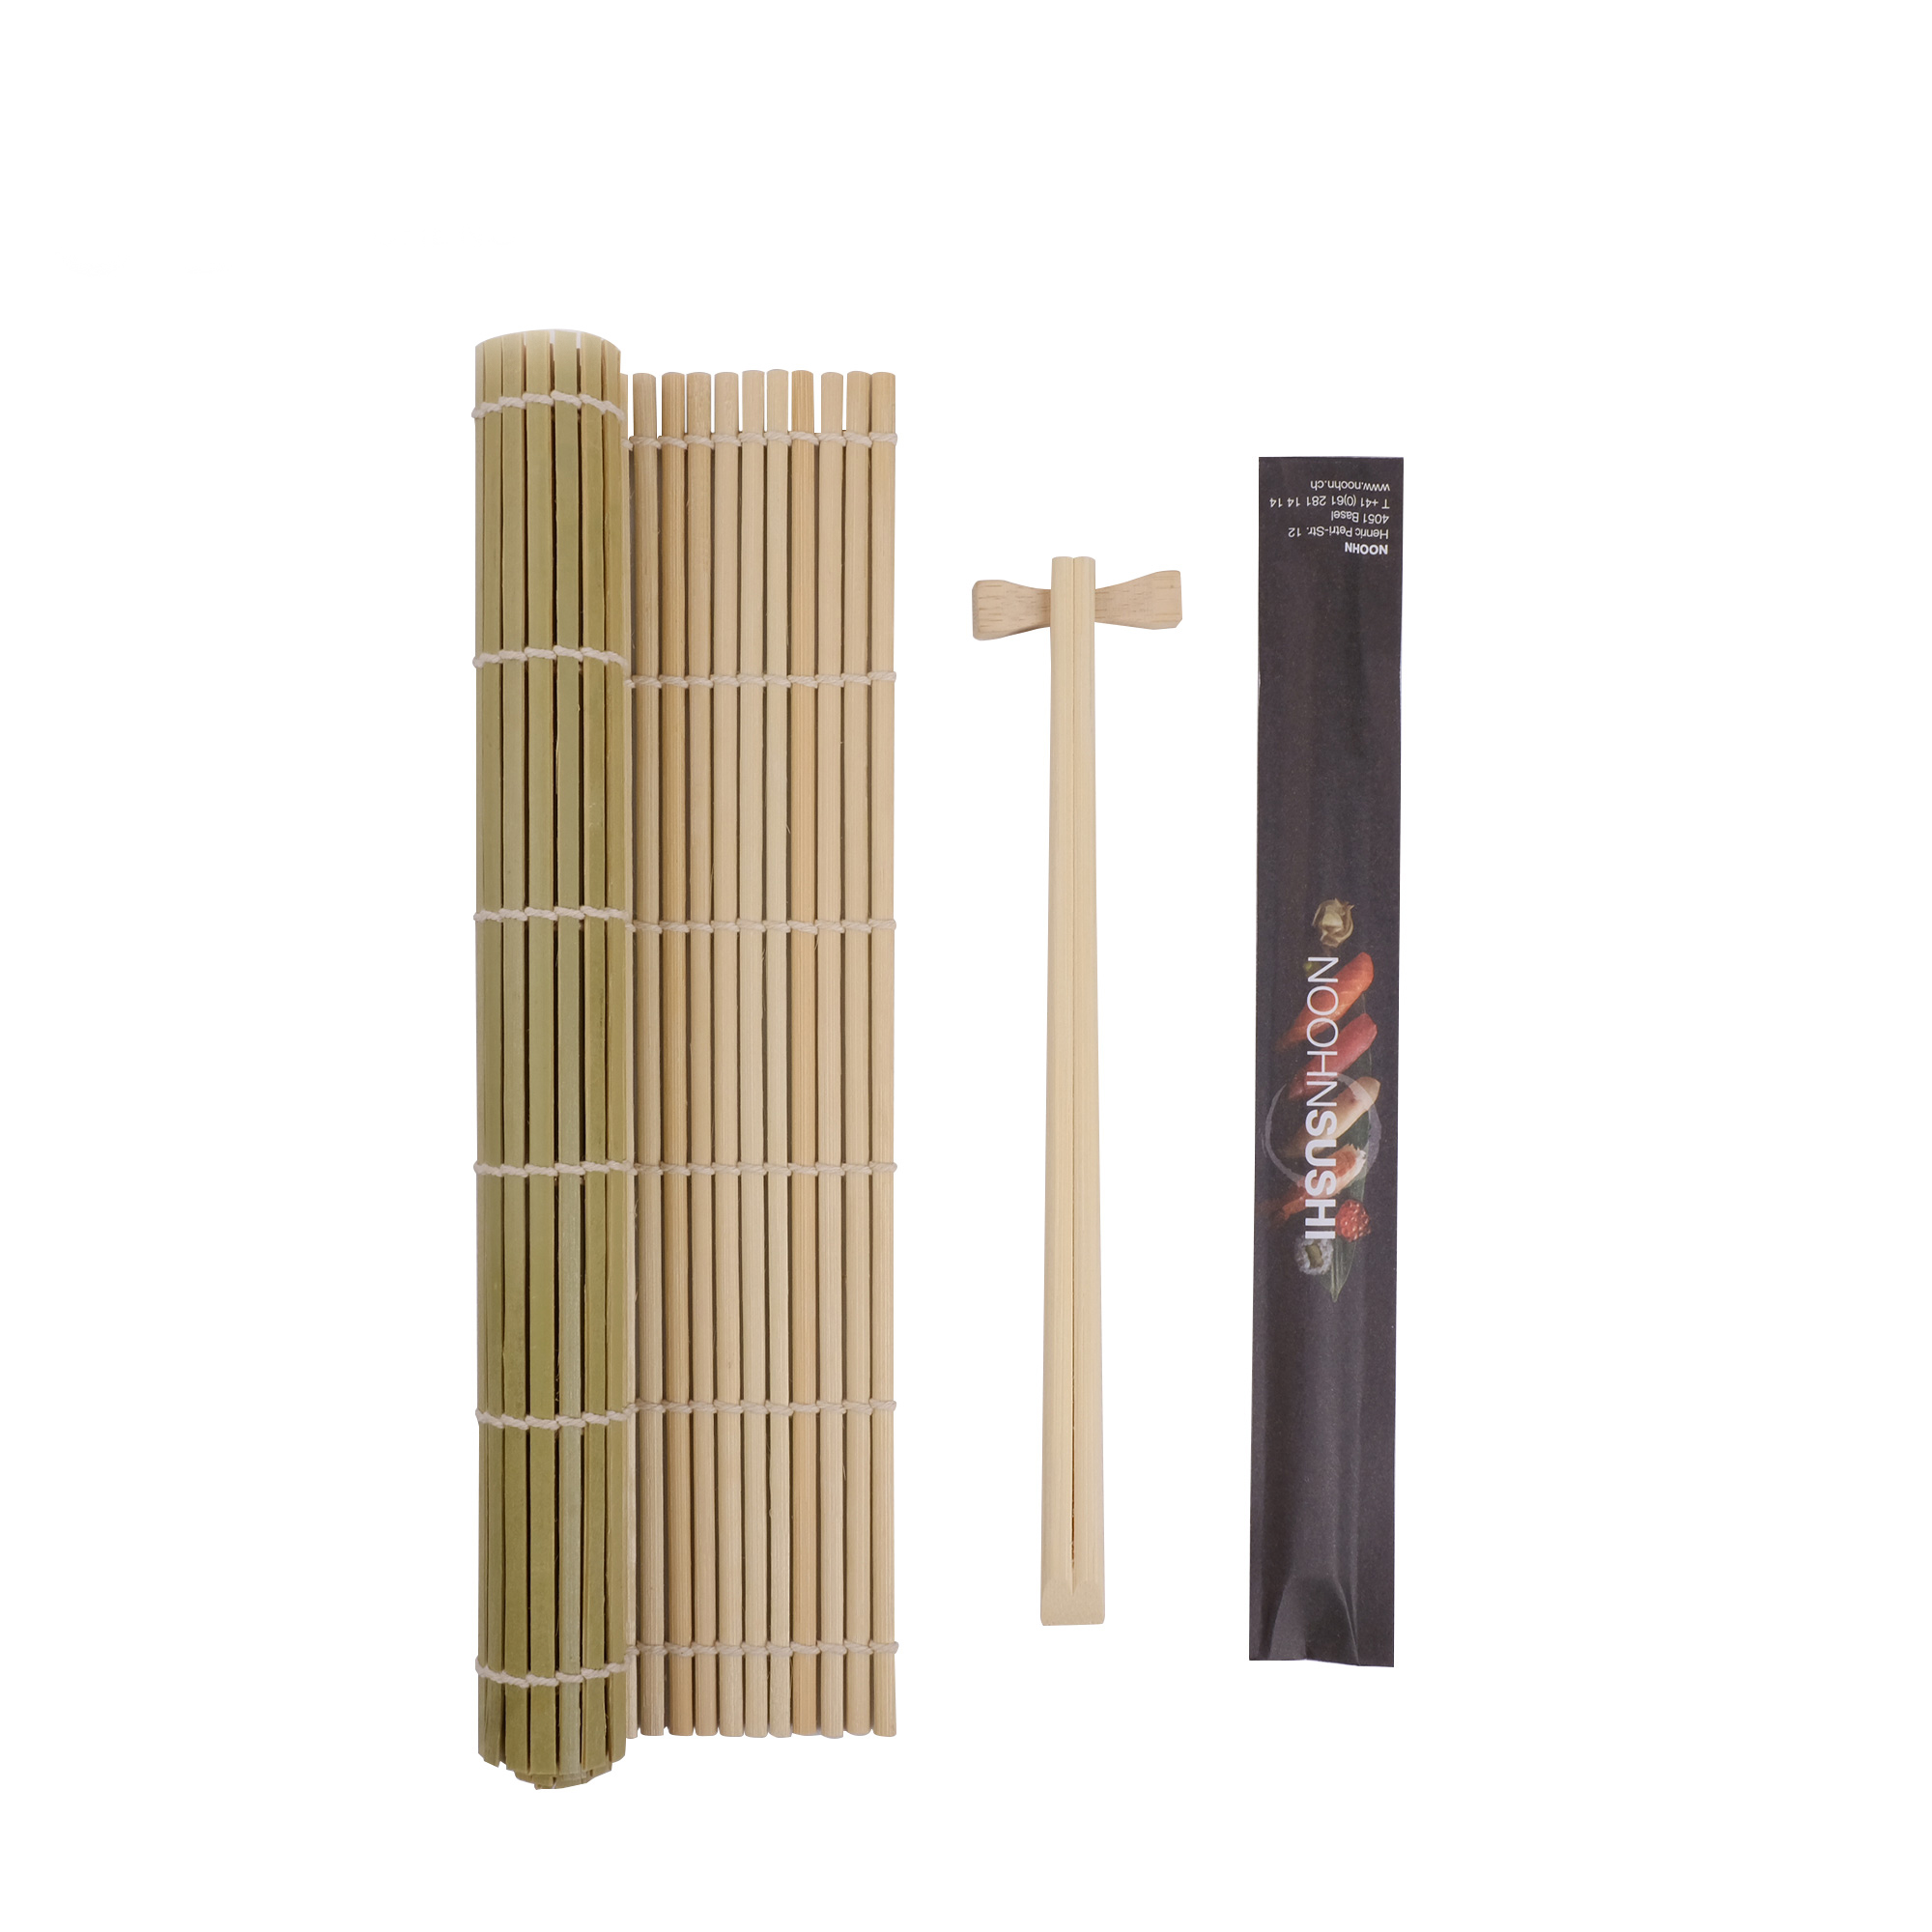 Buy Wholesale China Bamboo Sushi Rolling Mat Sushi Making Kit Diy